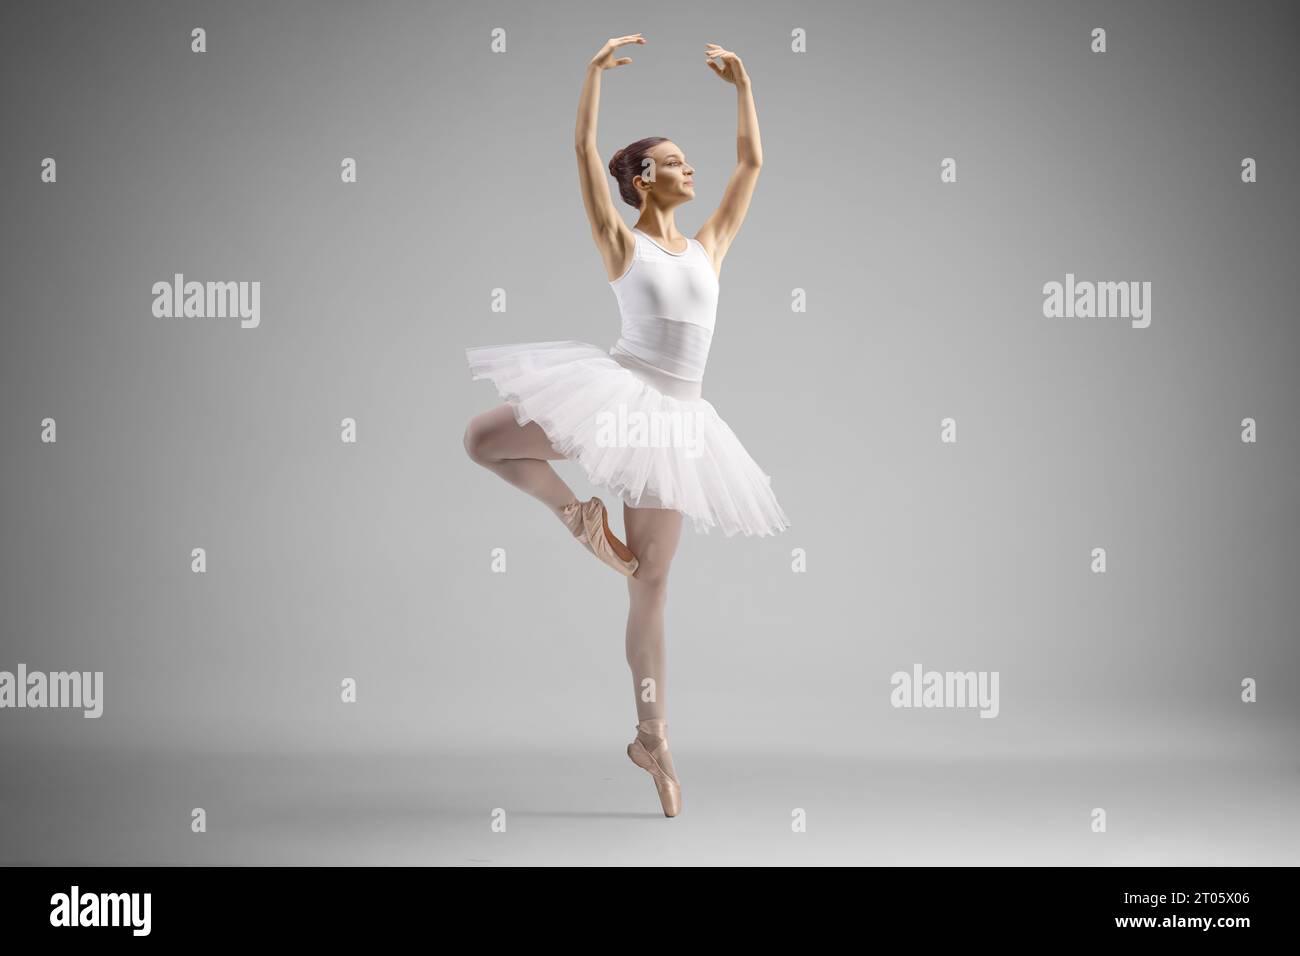 Aufnahme einer Ballerina in einem weißen Kleid, die isoliert auf grauem Hintergrund tanzt Stockfoto